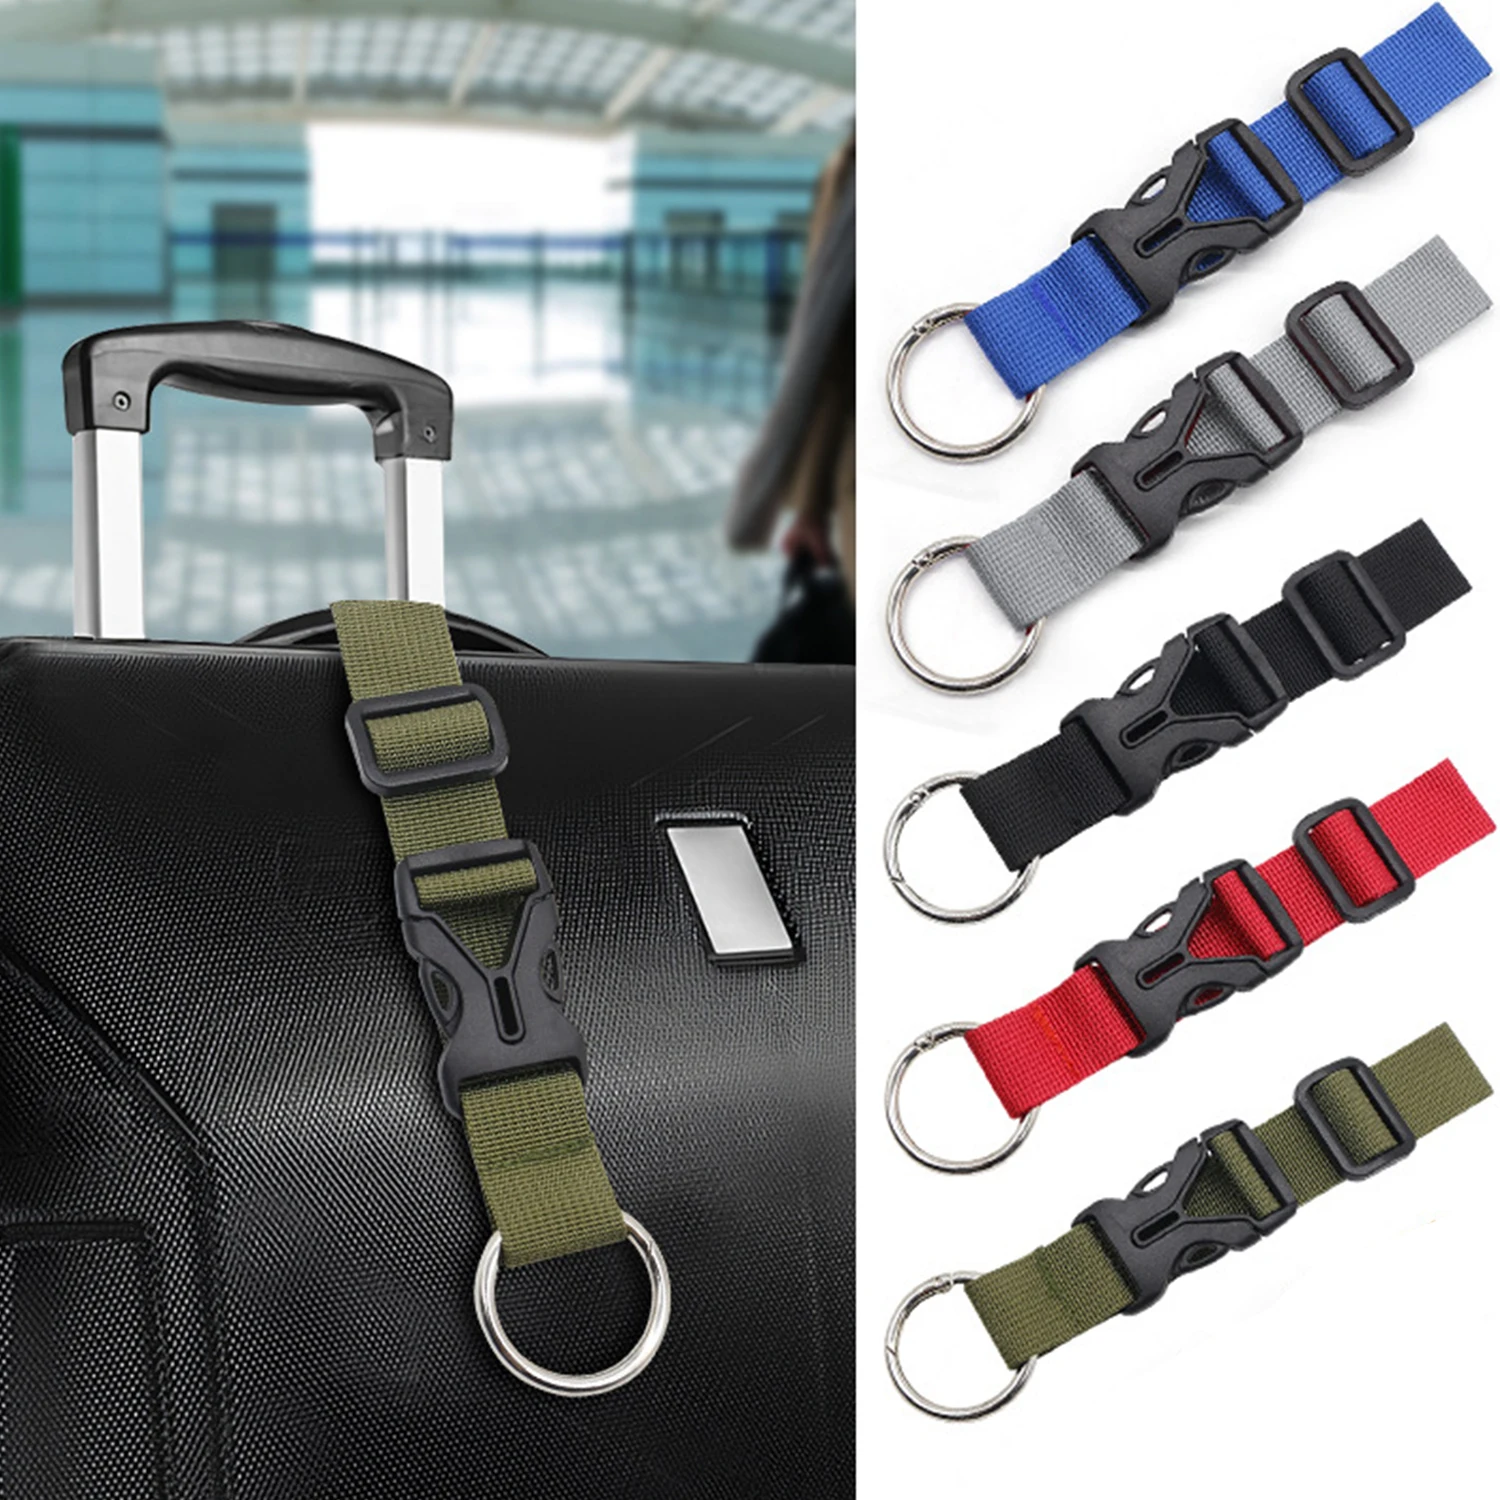 

Черный прочный нейлоновый ремень для груза с завязкой для багажа, ремешок для ресниц с пряжкой для камеры, наборы для путешествий, инструмент для кемпинга на открытом воздухе